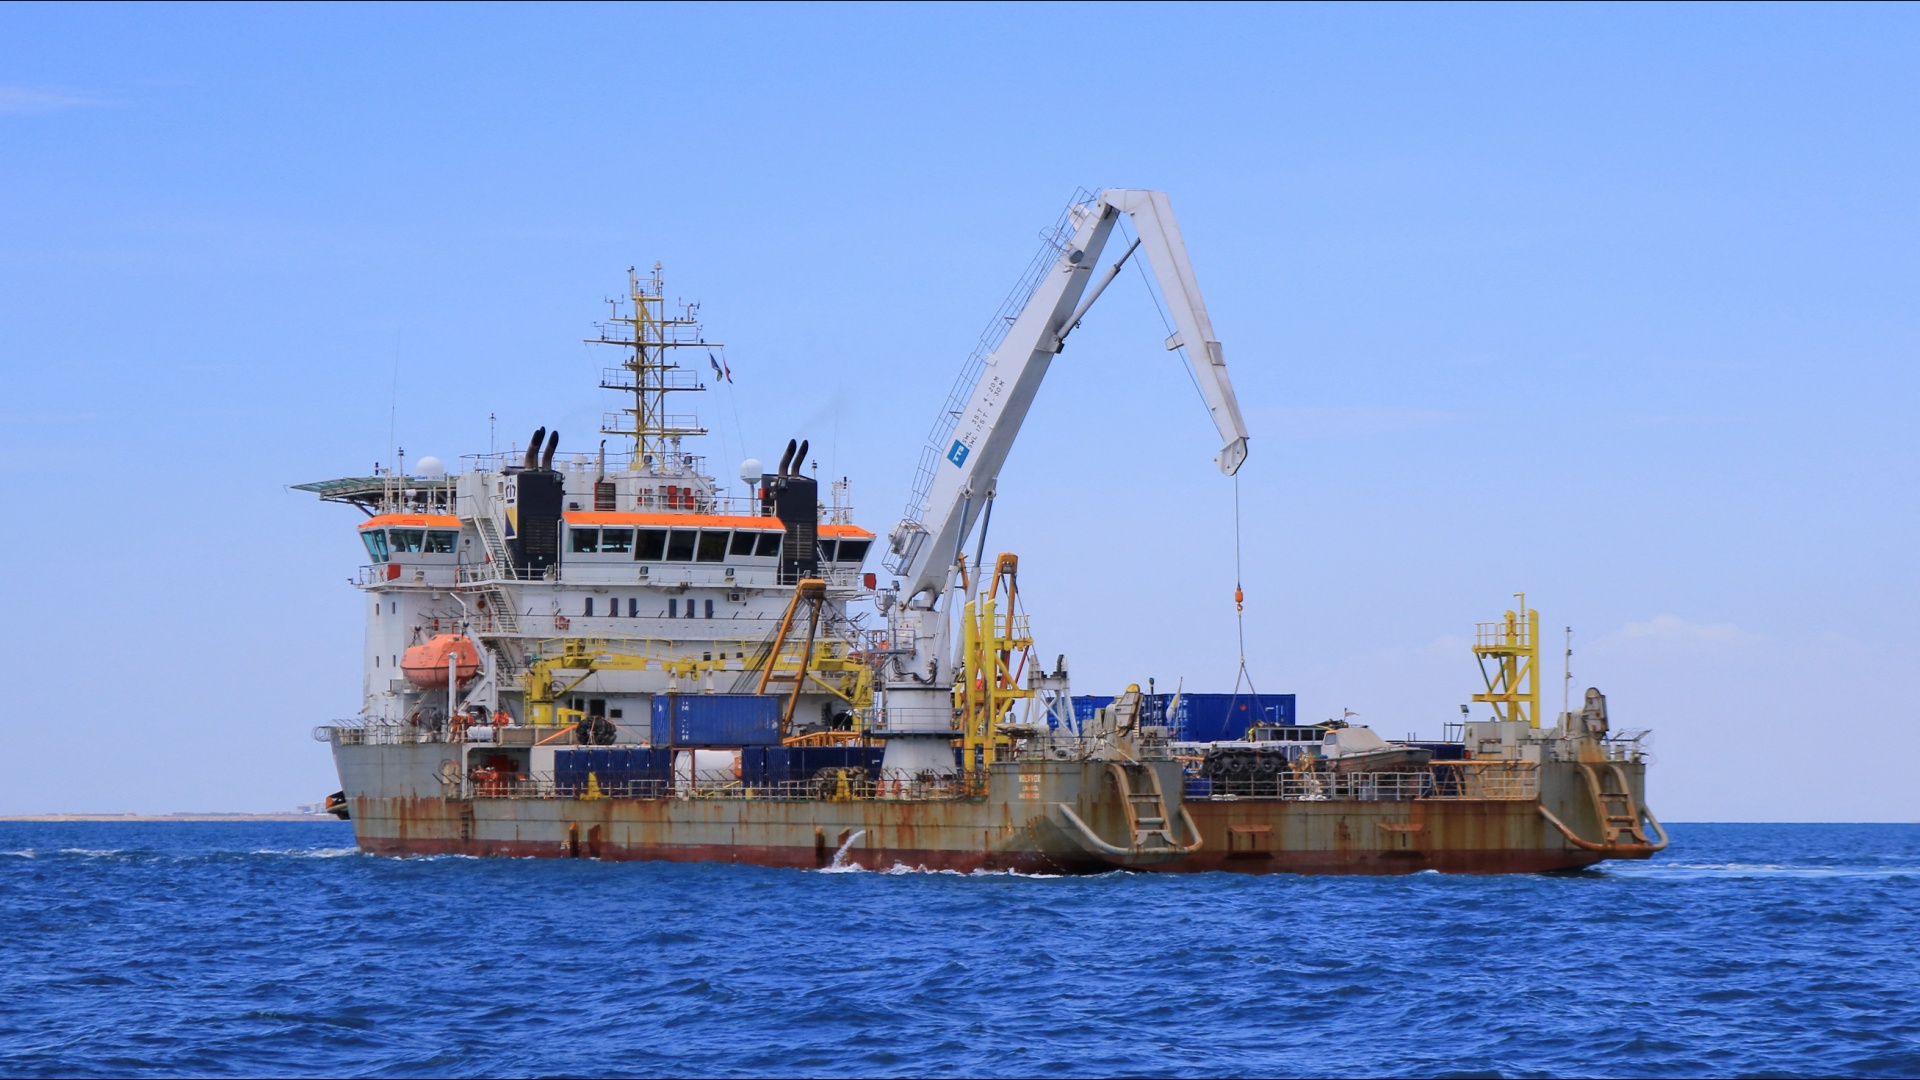 ООН начинает операцию по откачке нефти с танкера FSO Safer у берегов Йемена